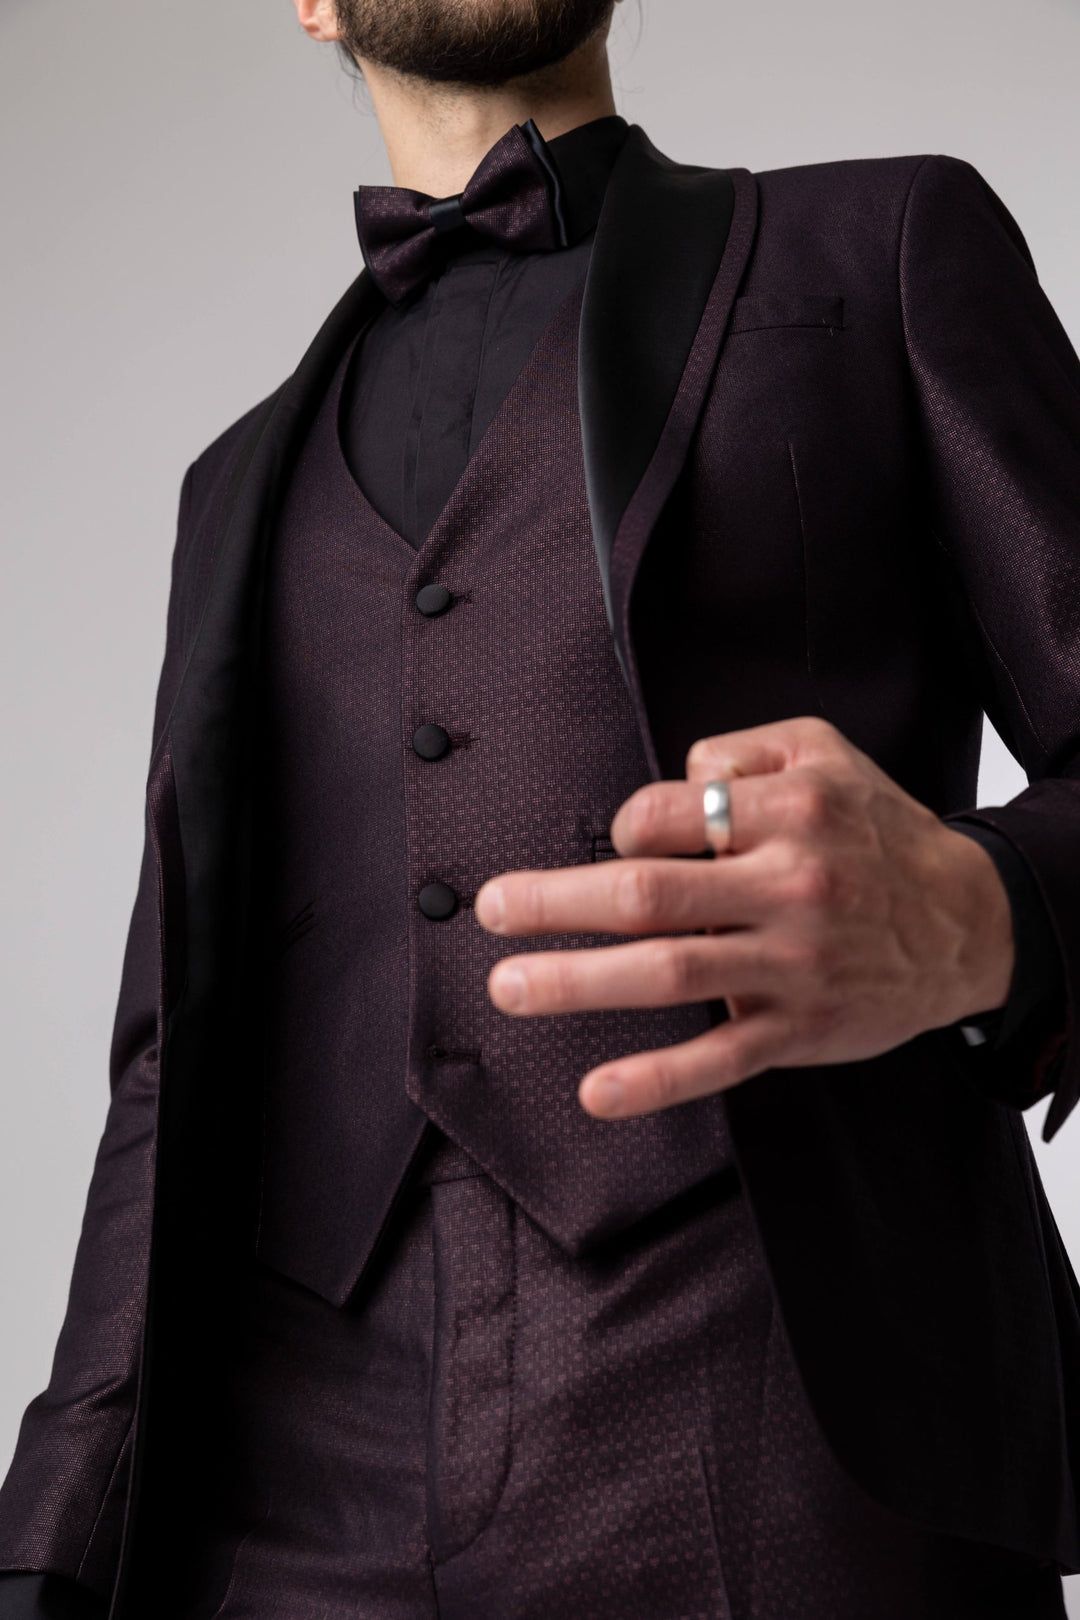 Three-piece burgundy tuxedo with bow tie